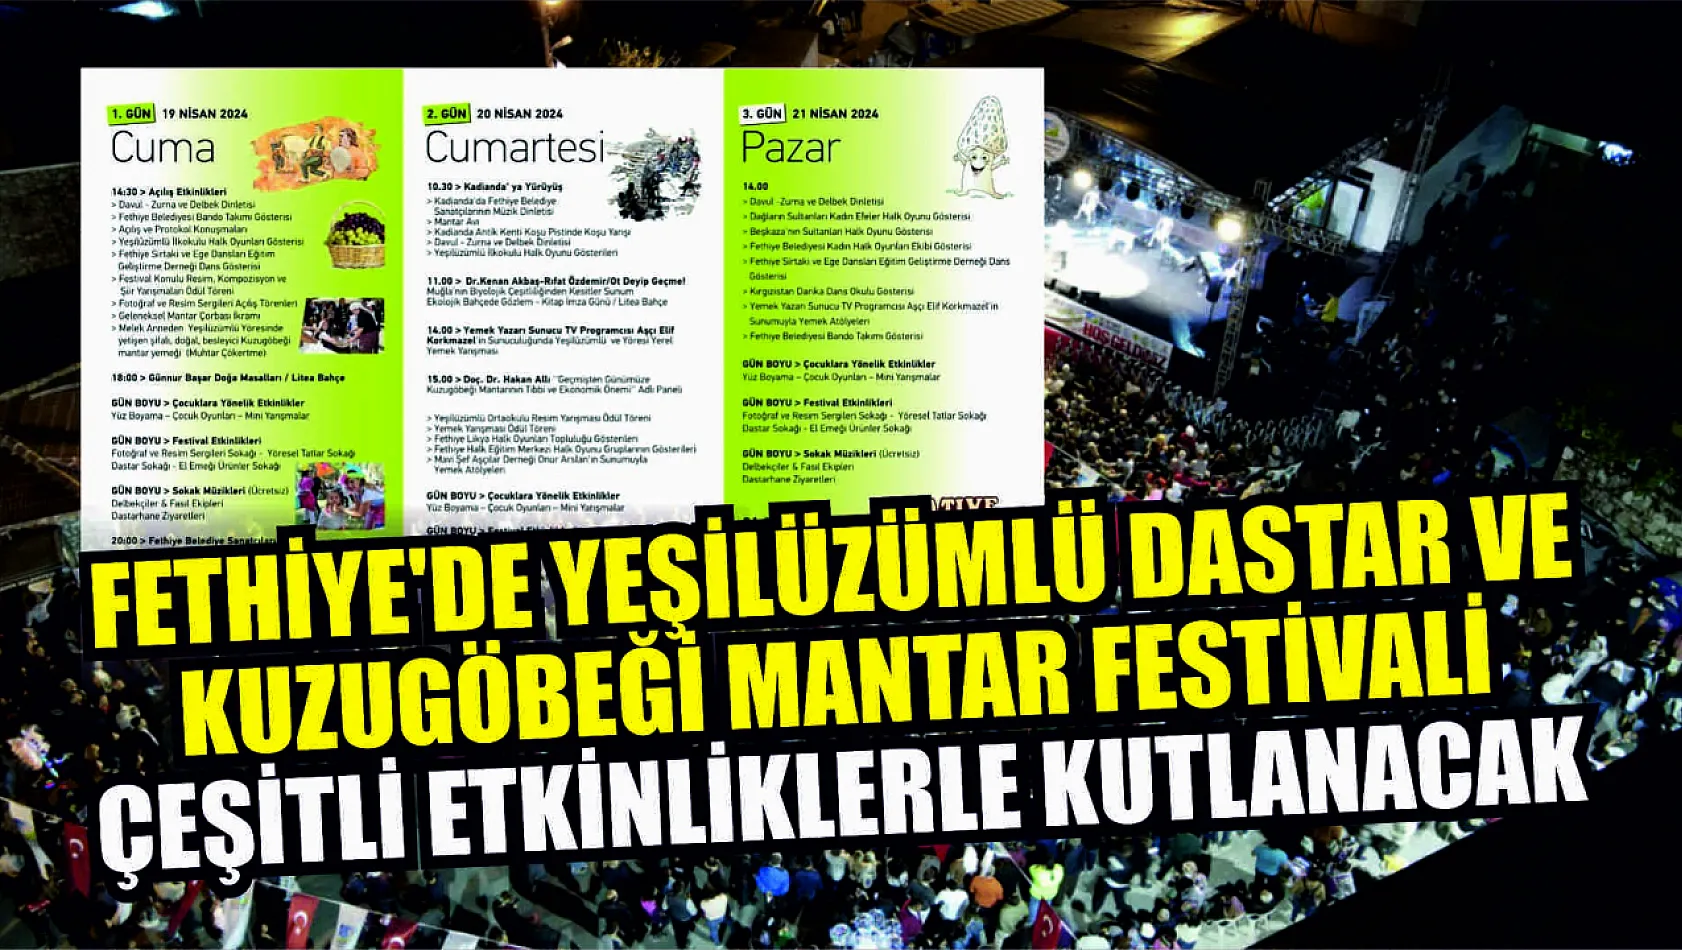 Fethiye'de Yeşilüzümlü Dastar ve Kuzugöbeği Mantar Festivali çeşitli etkinliklerle kutlanacak